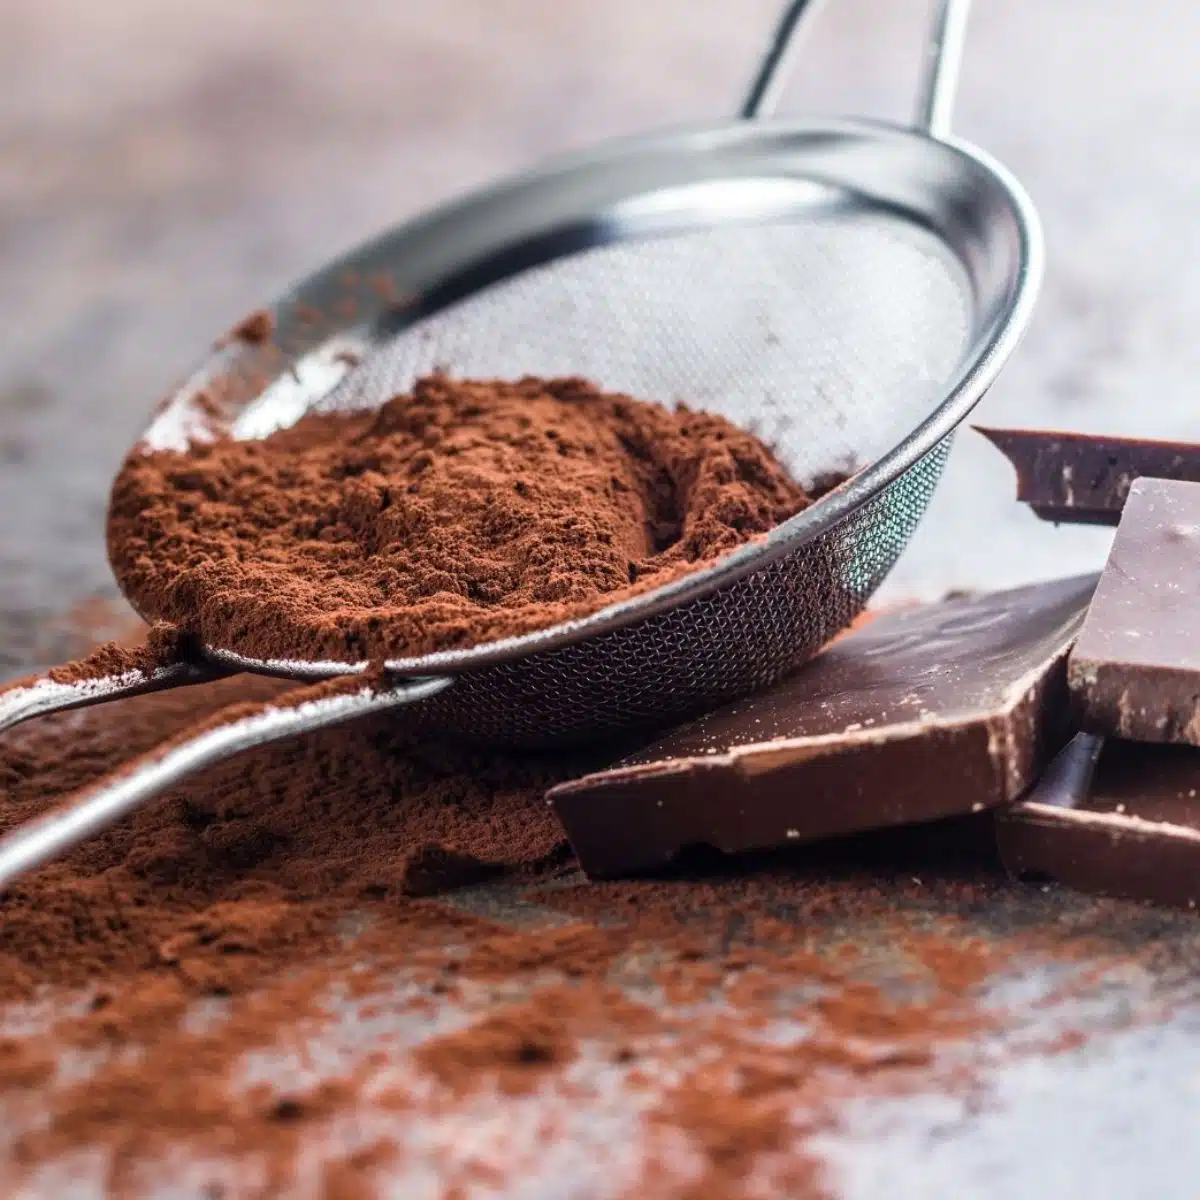 İnce gözenekli süzgeçte gevşek kakao tozu görüntüsü ile kakao tozu ikamesi.